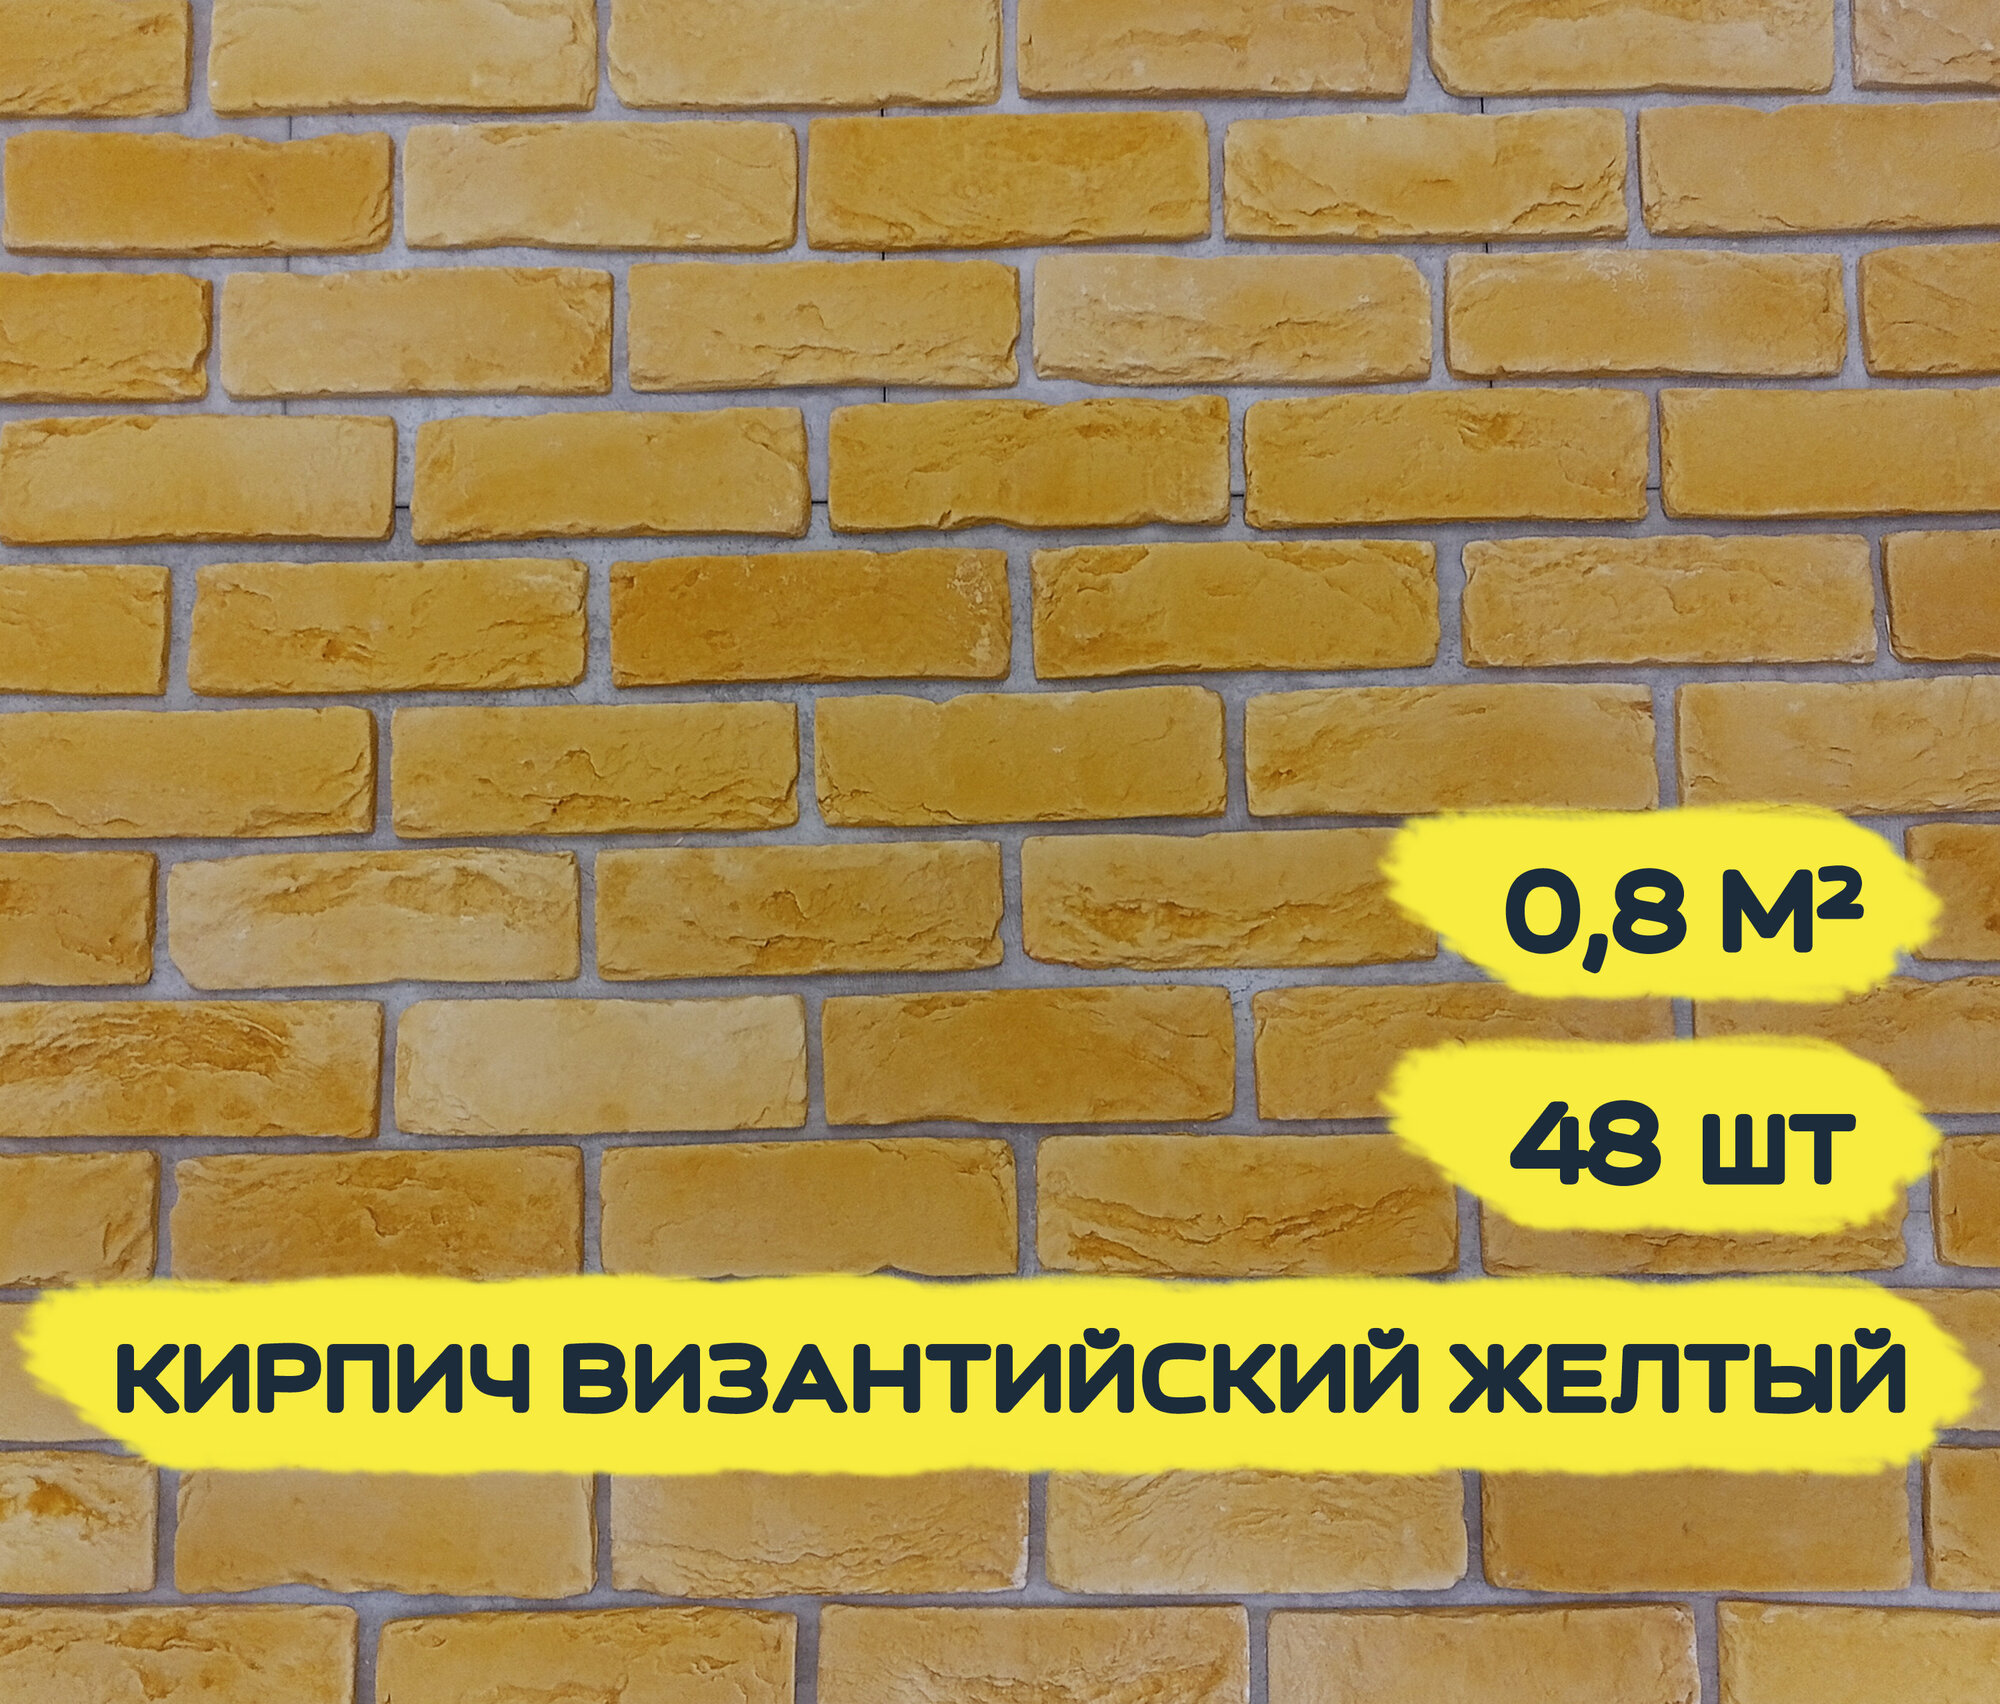 Декоративный кирпич из гипса "Византийский Желтый", 0,8 м2, 48шт